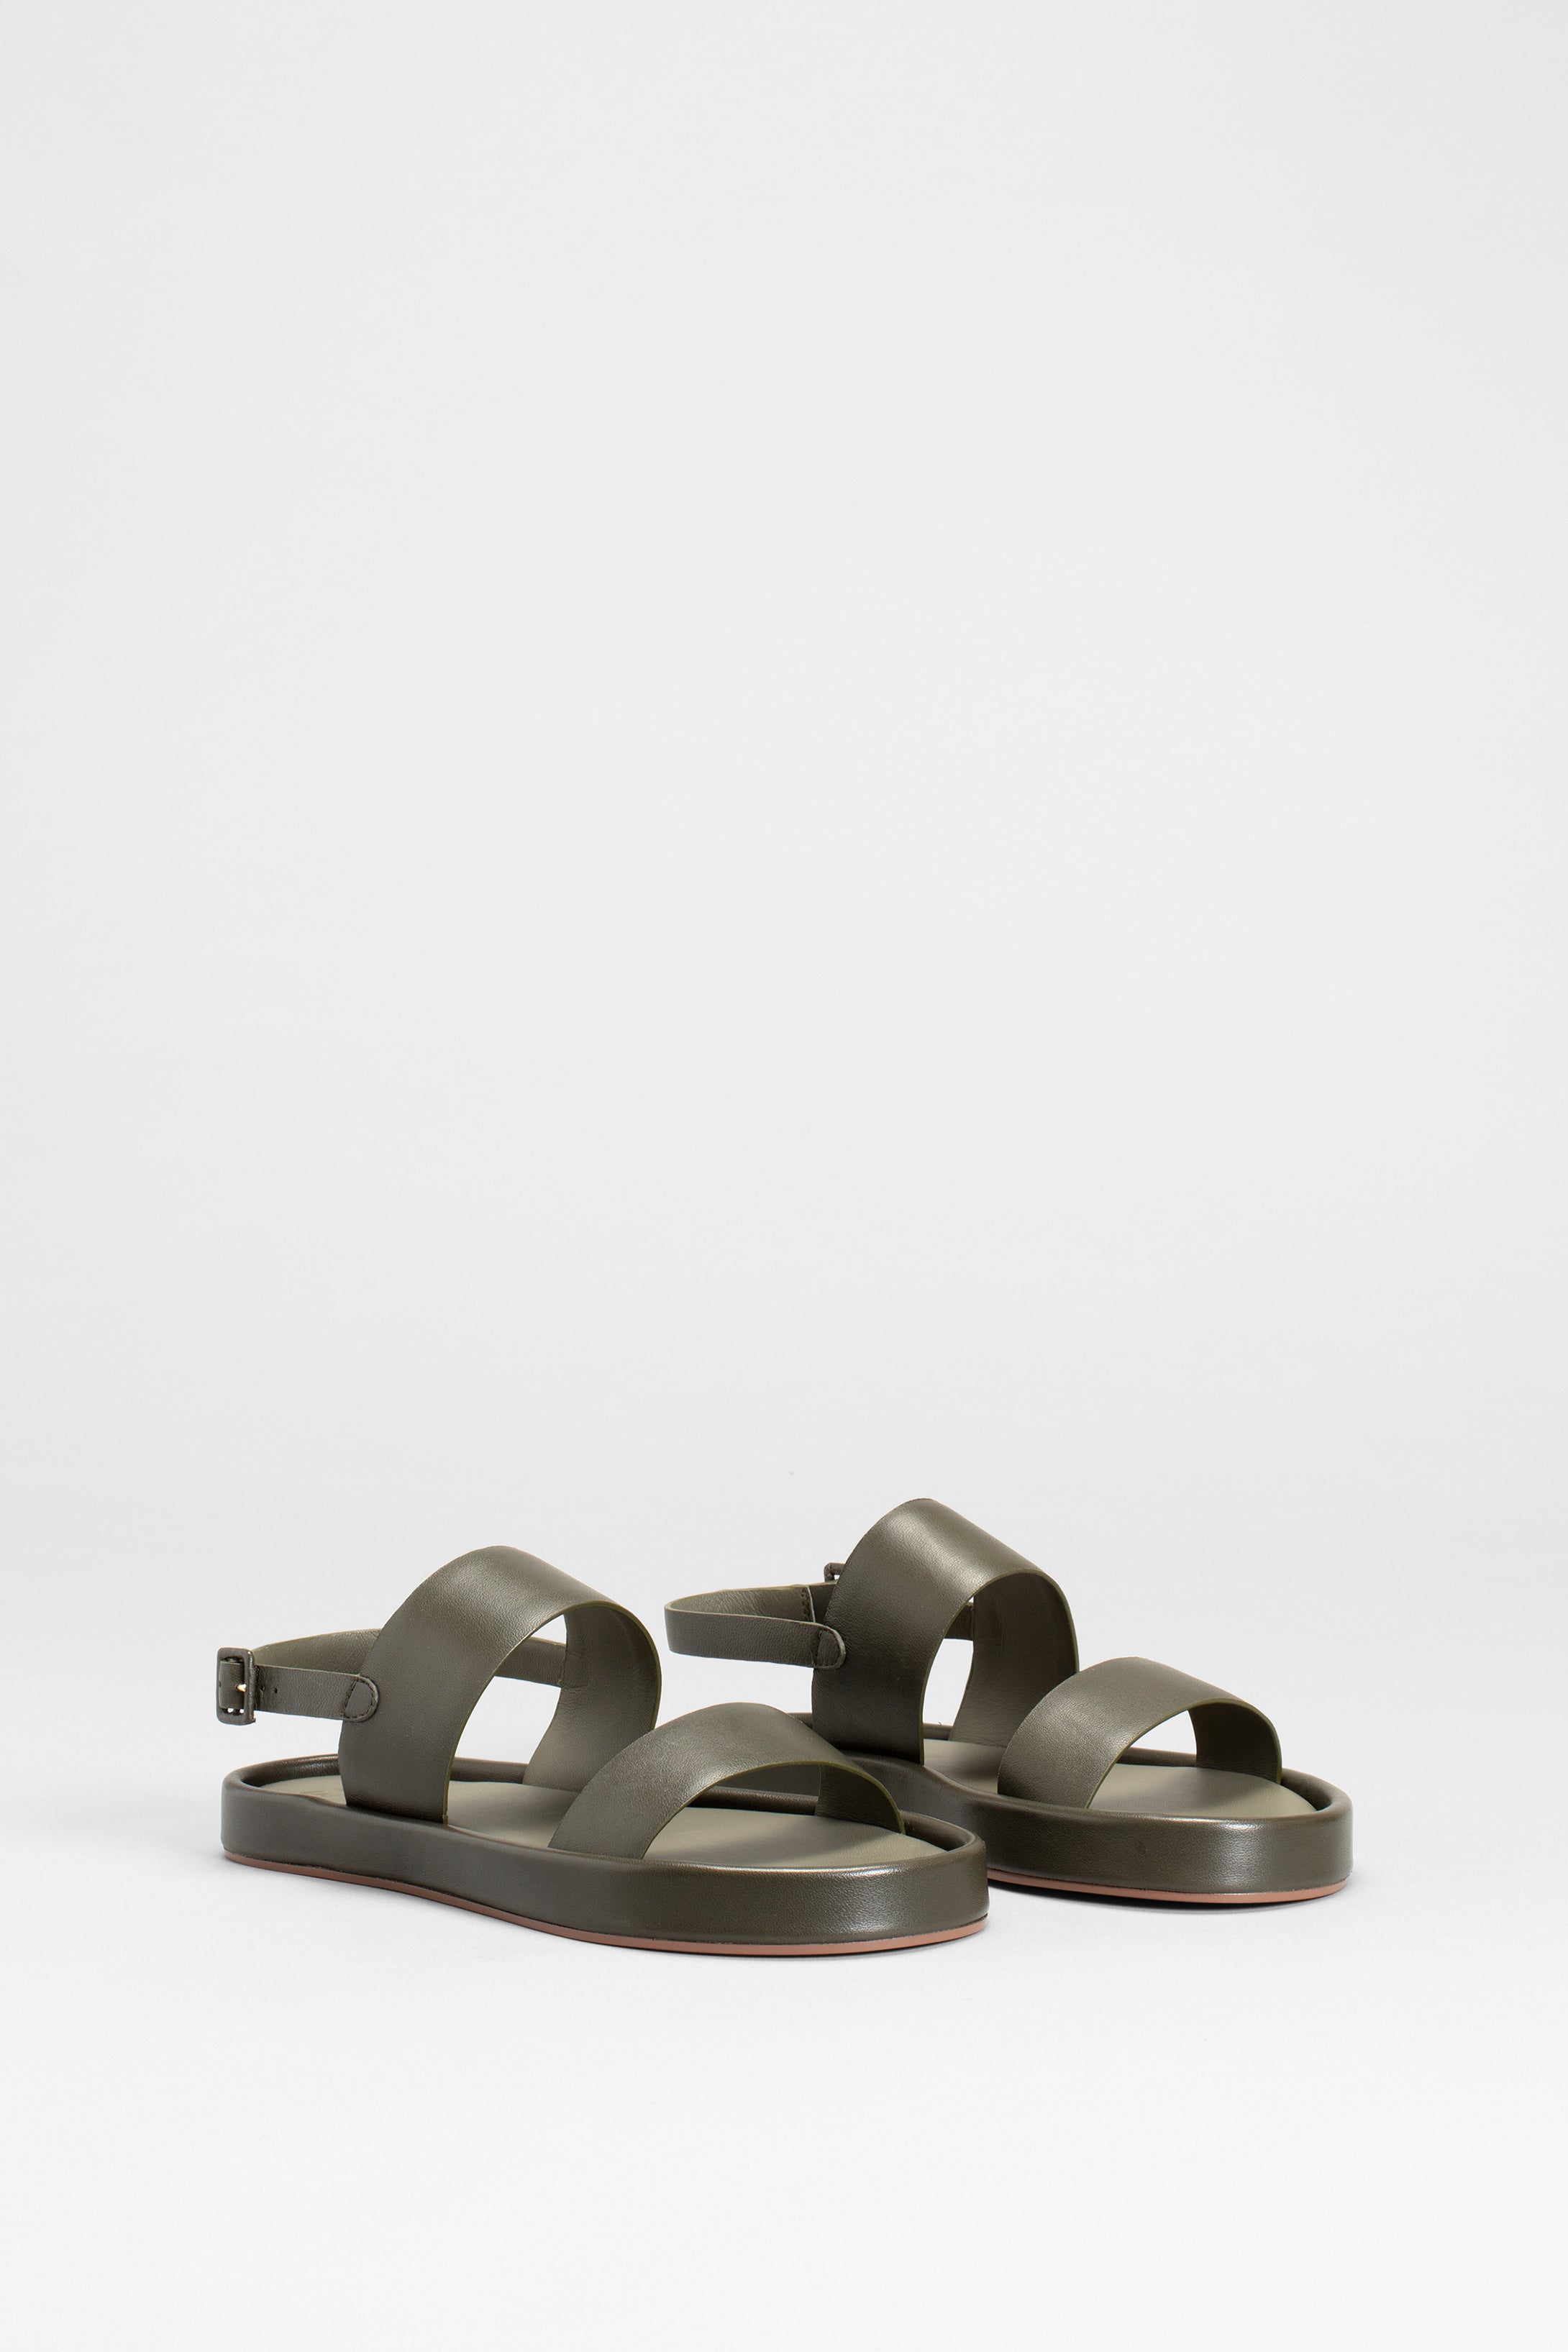 Seyta Leather Sandal Angled Front | OLIVE